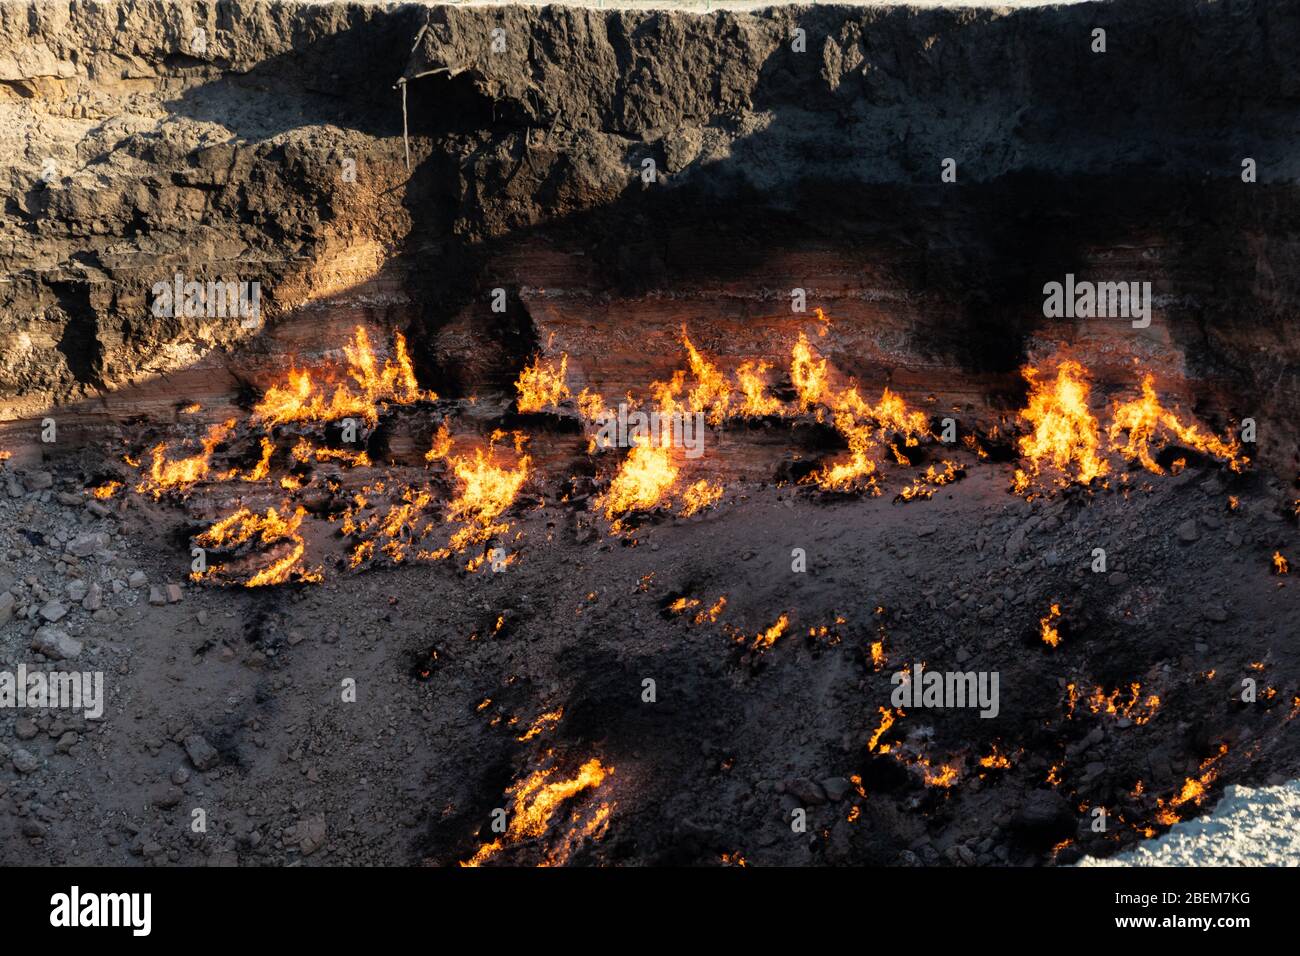 Der Darvasa Krater, auch bekannt als der Tor zur Hölle, der Flammengaskrater in Darvaza (Darvasa), Turkmenistan Stockfoto